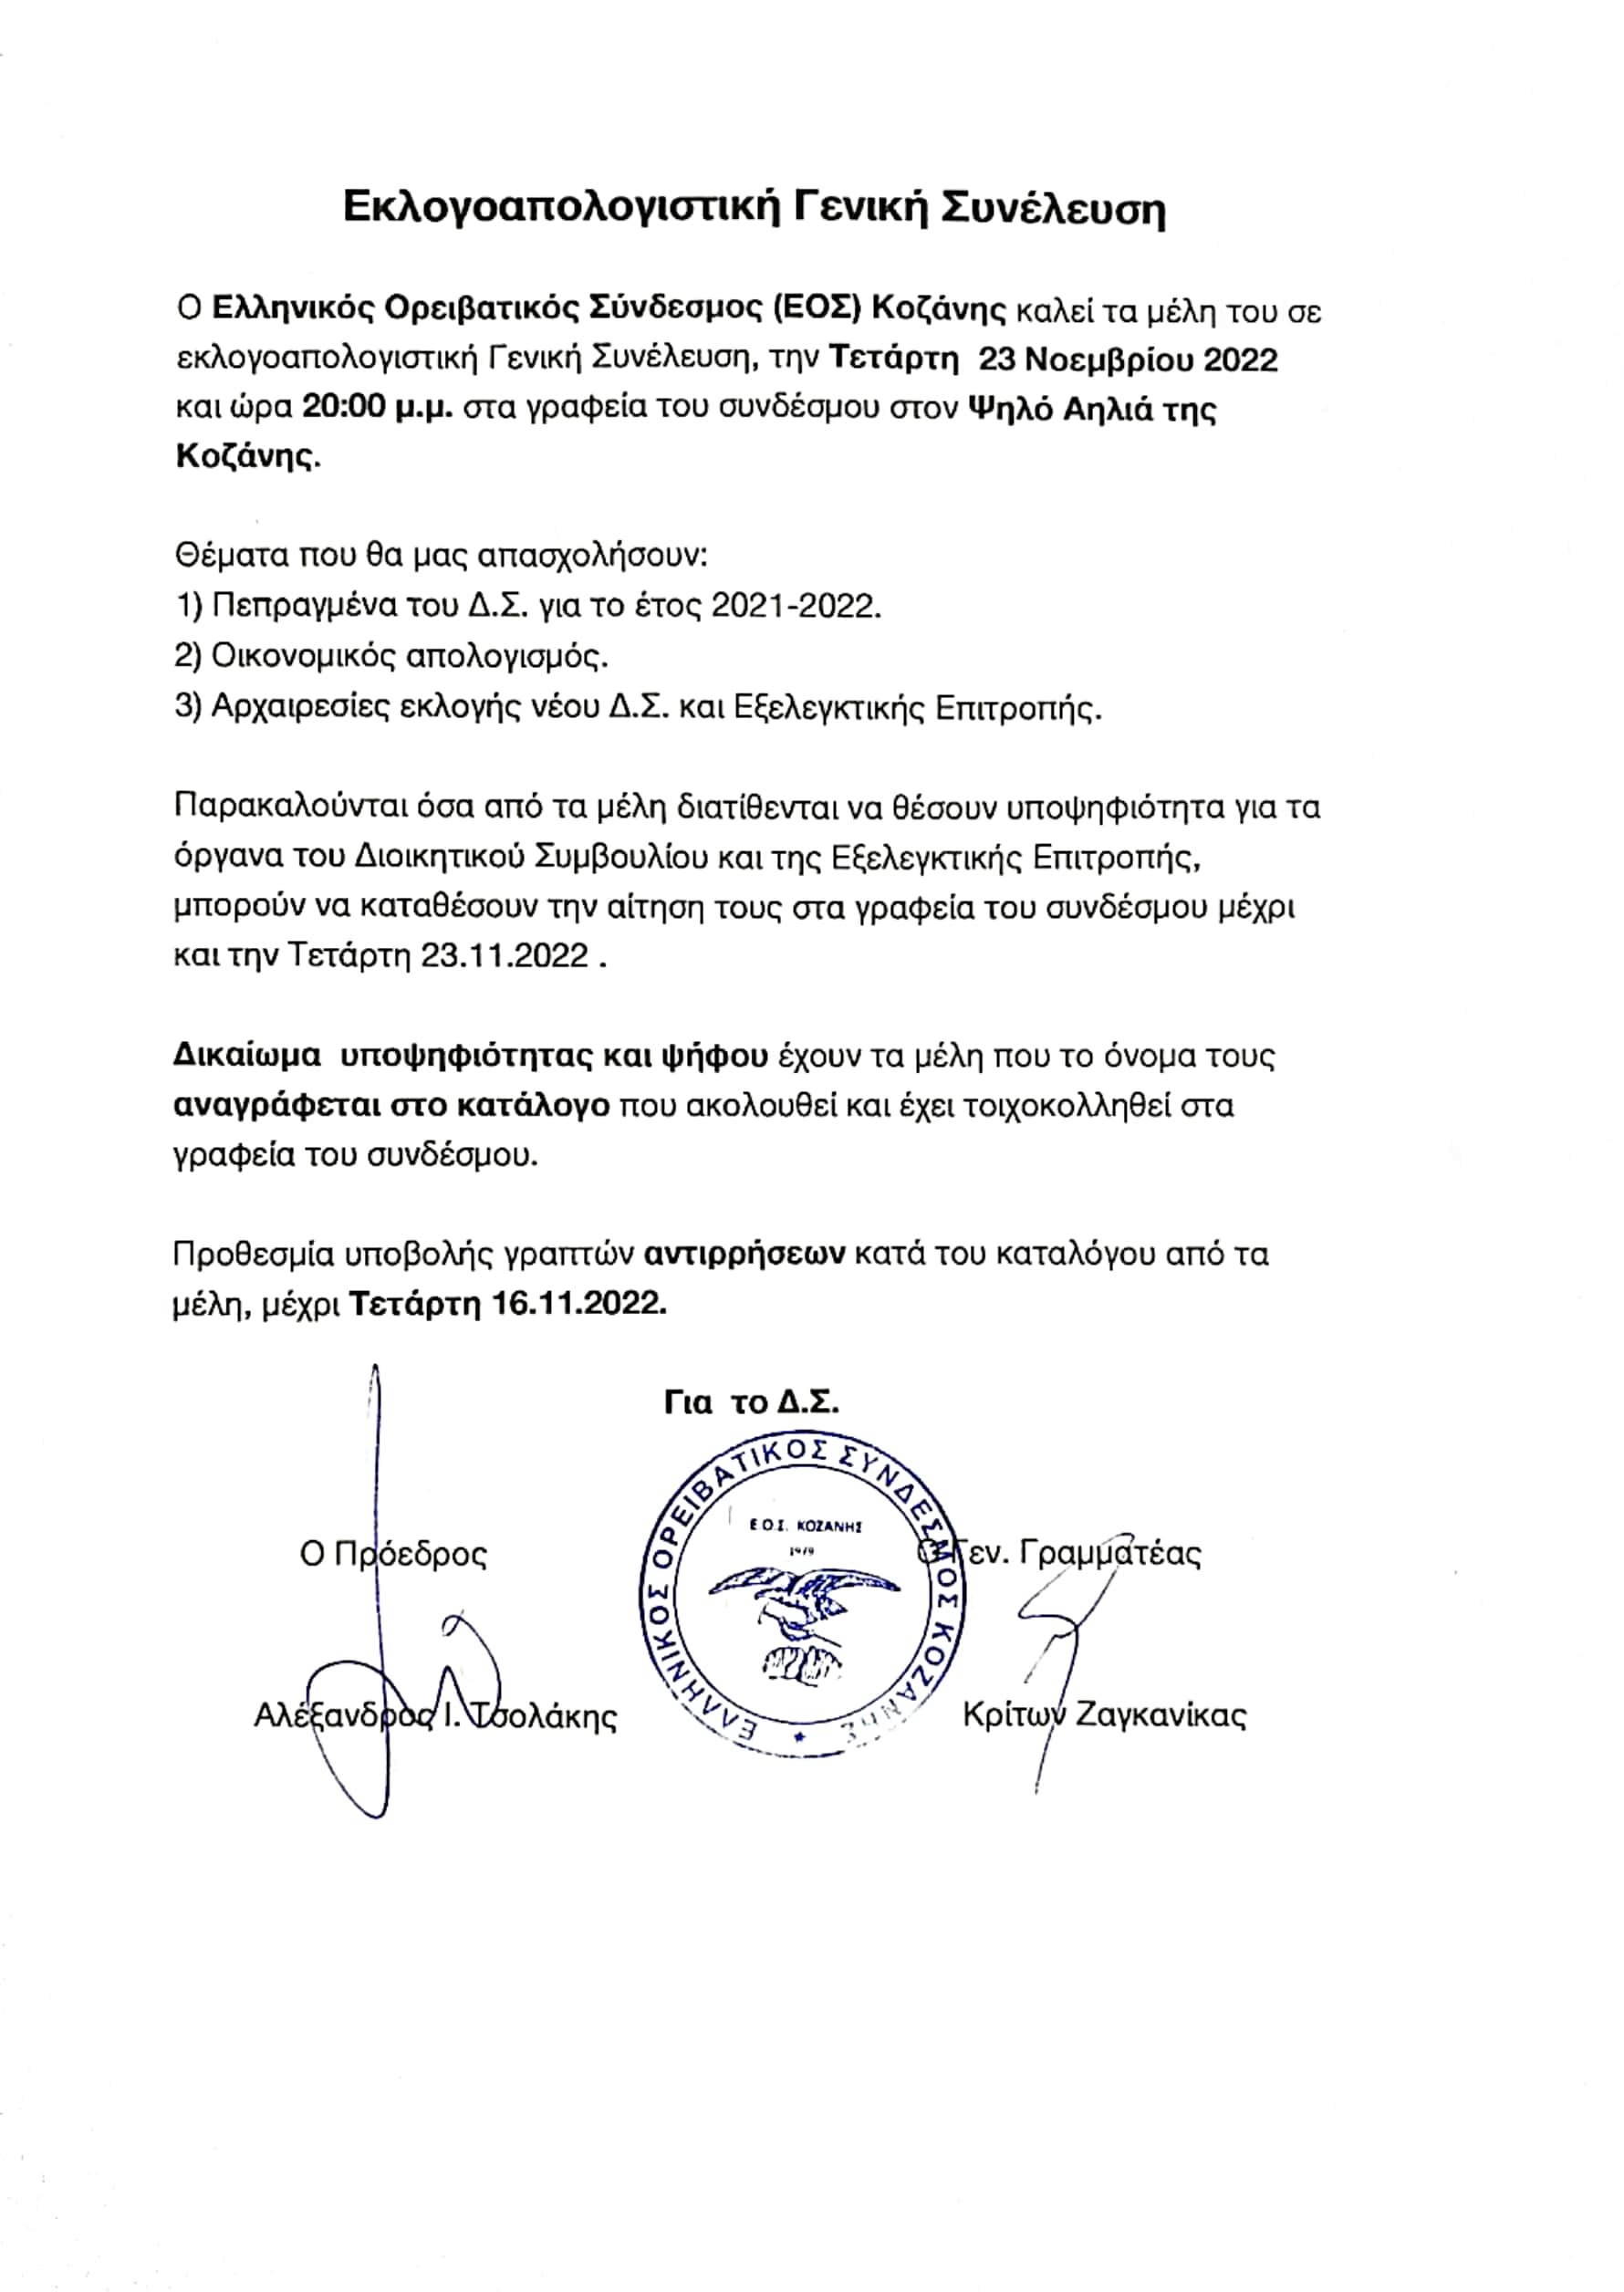 Ο Ελληνικός Ορειβατικός Σύνδεσμος (ΕΟΣ) Κοζάνης καλεί τα μέλη του σε εκλογοαπολογιστική Γενική Συνέλευση, την Τετάρτη 23 Νοεμβρίου 2022 και ώρα 20:00 μ.μ. στα γραφεία του συνδέσμου στον Ψηλό Αηλιά της Κοζάνης. Θέματα που θα μας απασχολήσουν: 1) Πεπραγμένα του Δ.Σ. για το έτος 2021-2022. 2) Οικονομικός απολογισμός. 3) Αρχαιρεσίες εκλογής νέου Δ.Σ. και Εξελεγκτικής Επιτροπής.